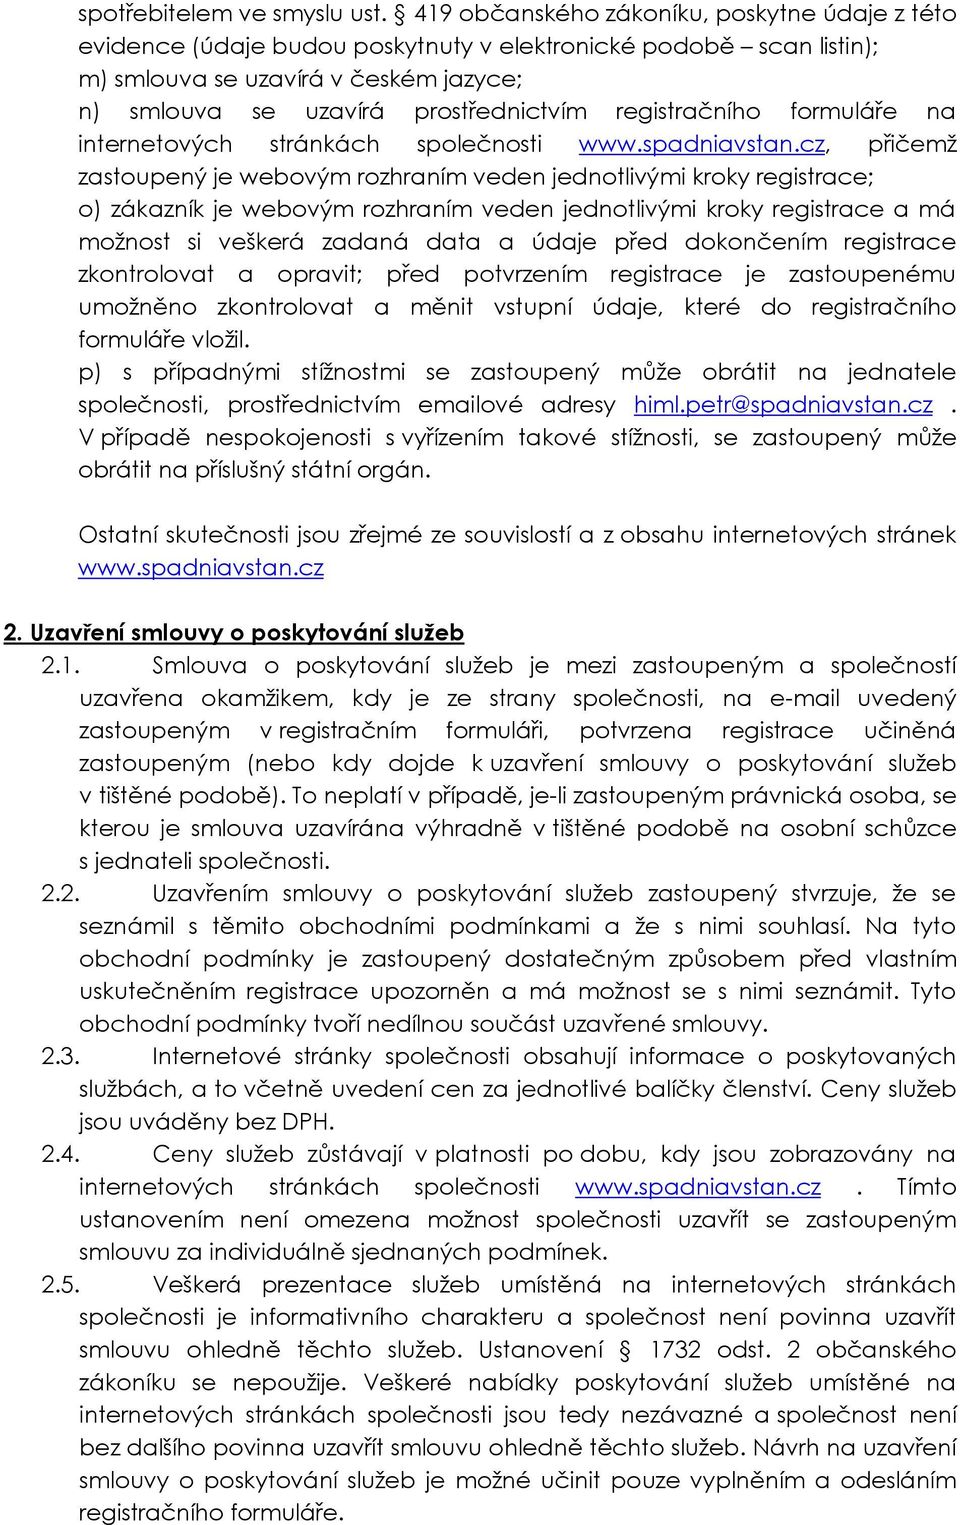 registračního formuláře na internetových stránkách společnosti www.spadniavstan.